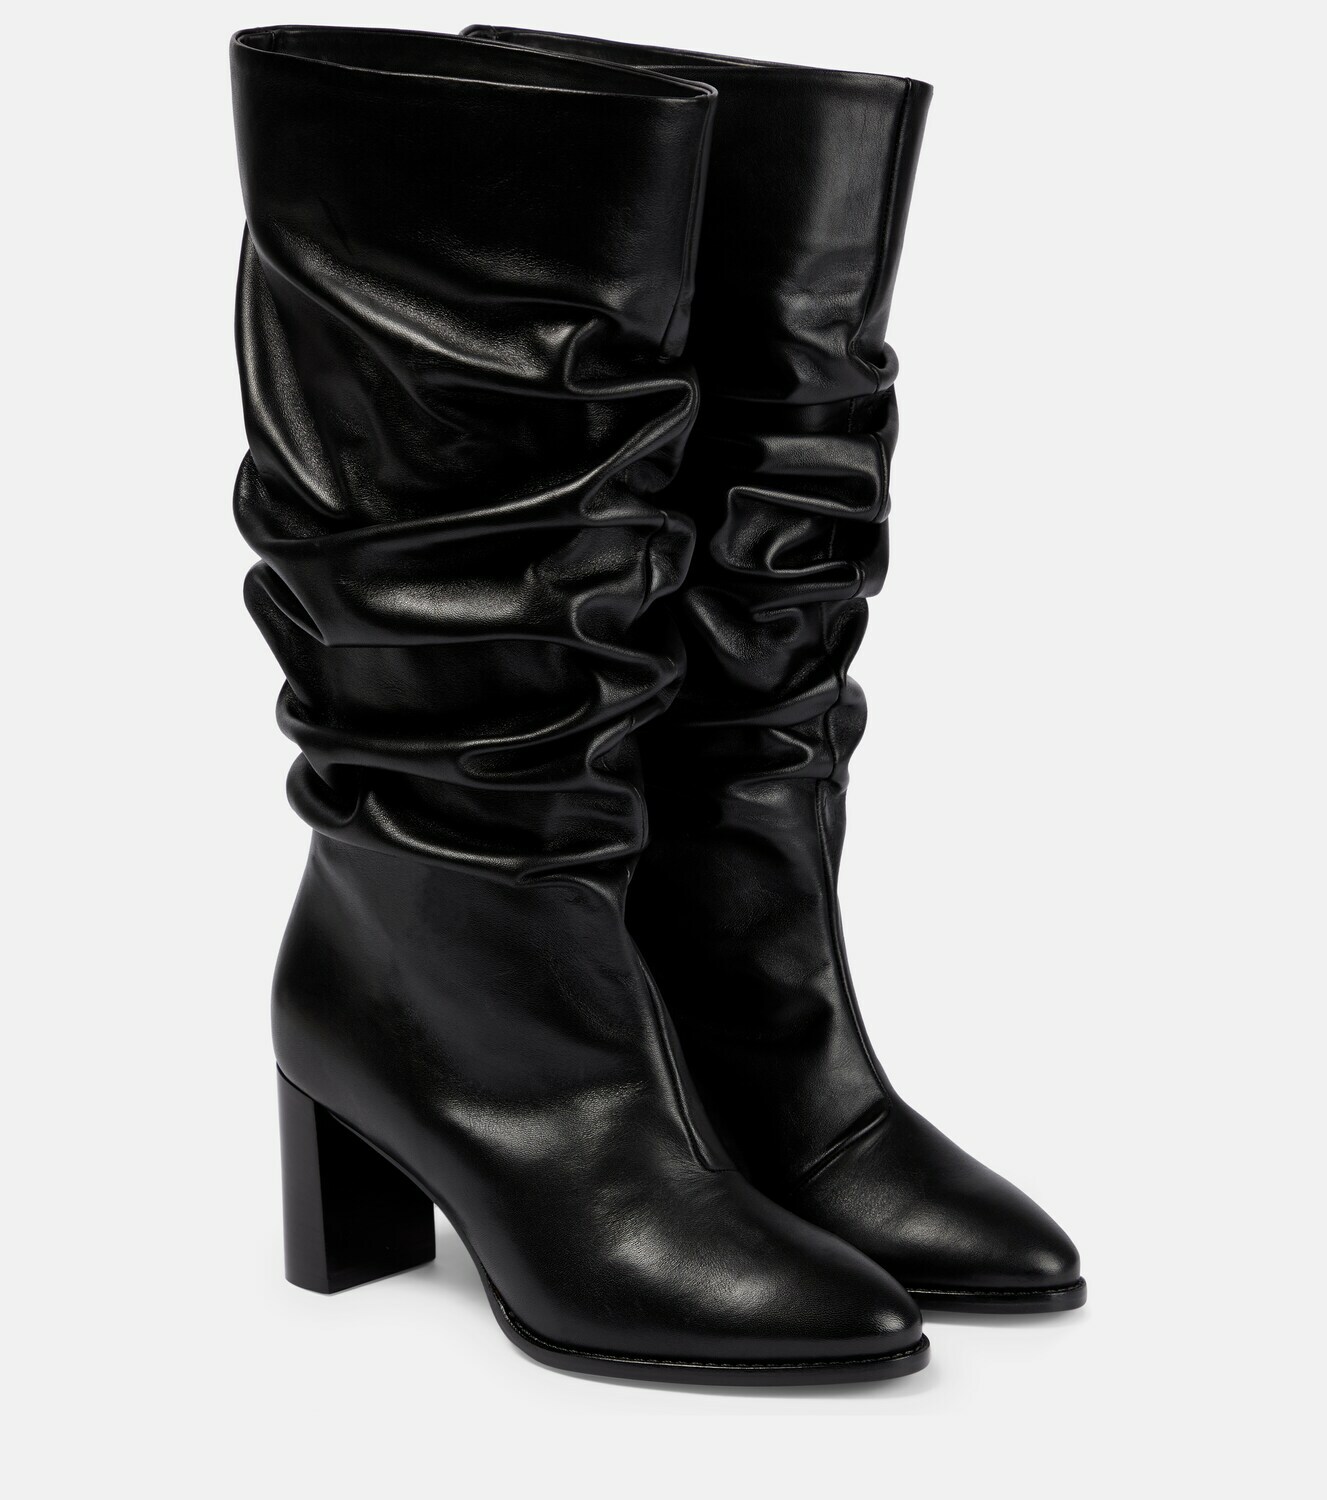 Dorothee Schumacher - Leather boots Dorothee Schumacher